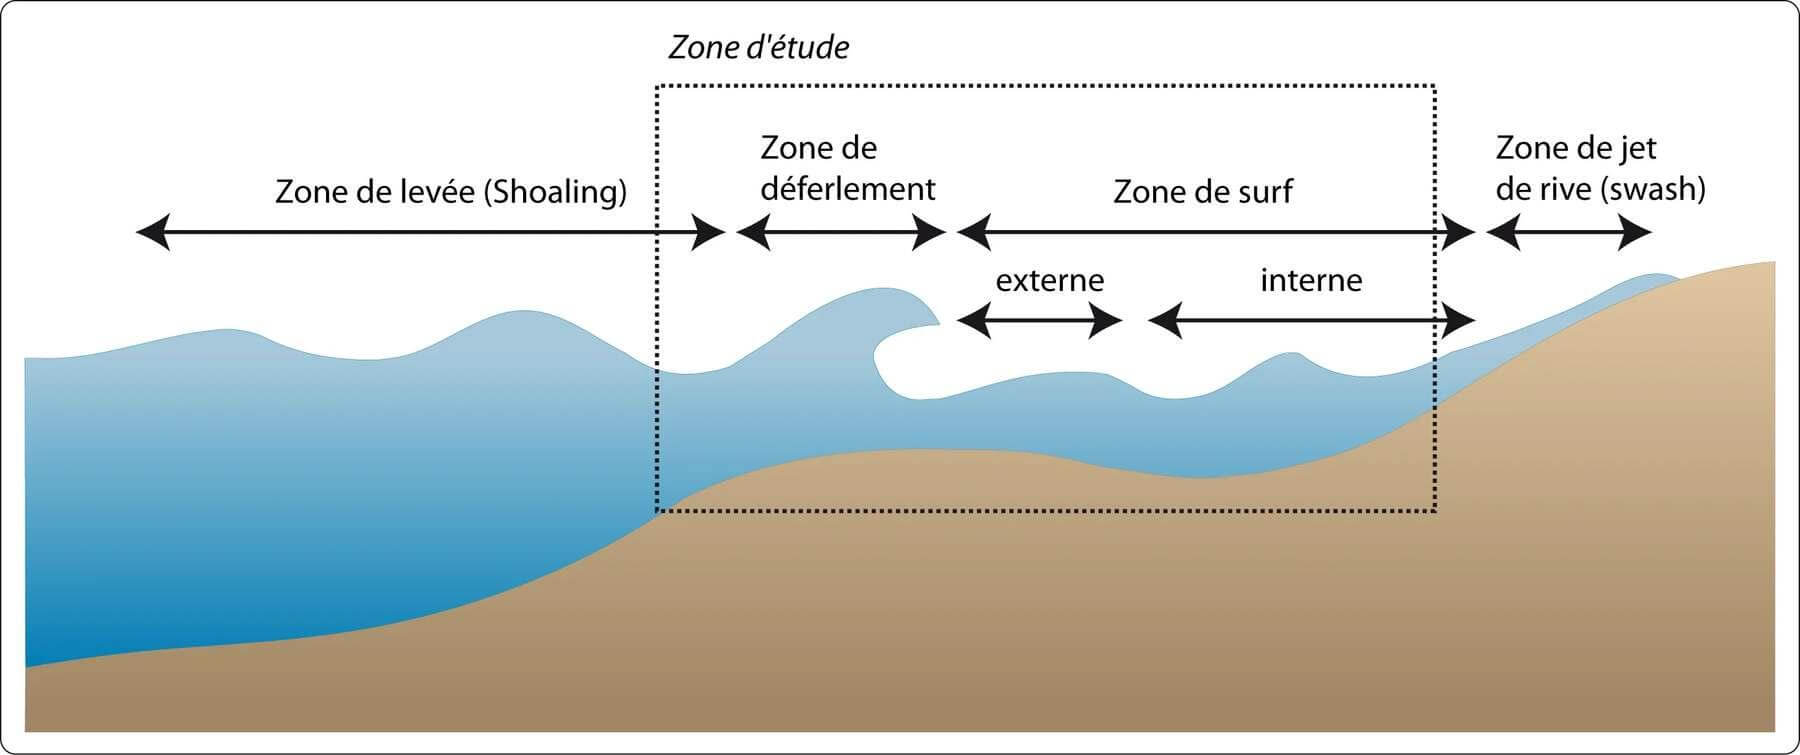 Les différentes zones hydrodynamiques (Cartier, 2011)